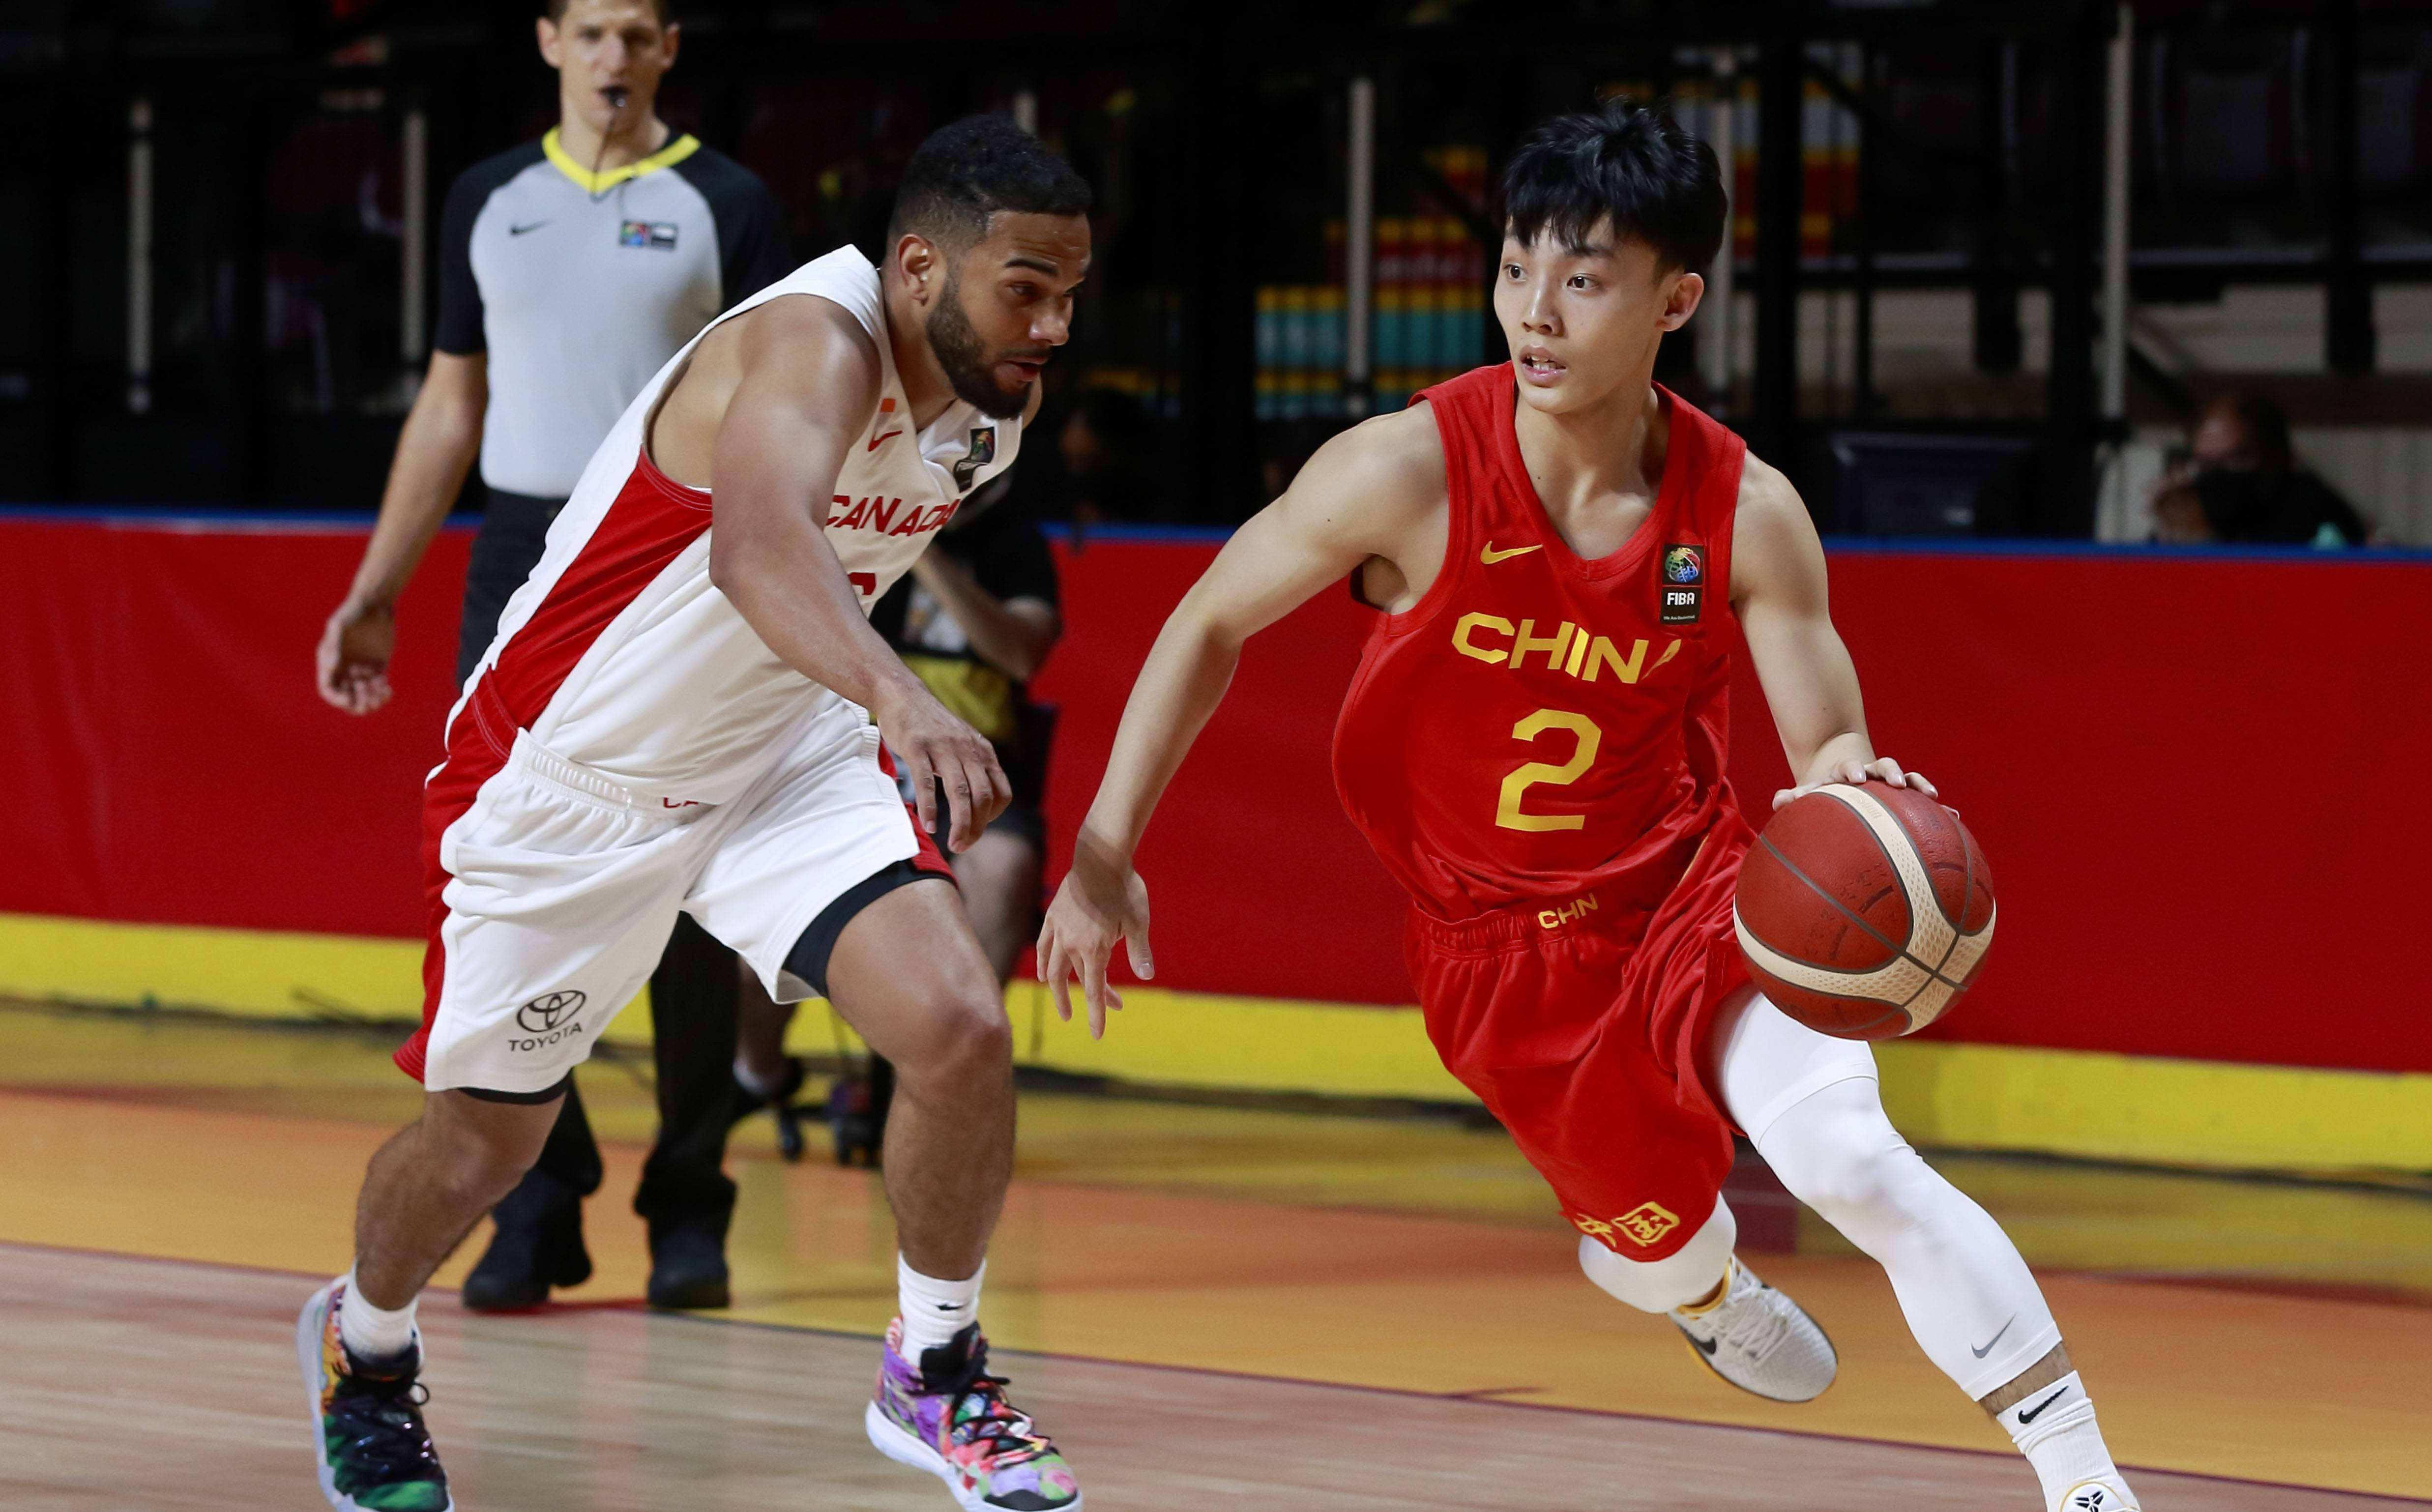 Danh sách 12 người trong thông báo chính thức bóng rổ nam Trung Quốc, lý do của Xu Jie đã được công bố một lần nữa, Du Feng không thấy sai người (3)